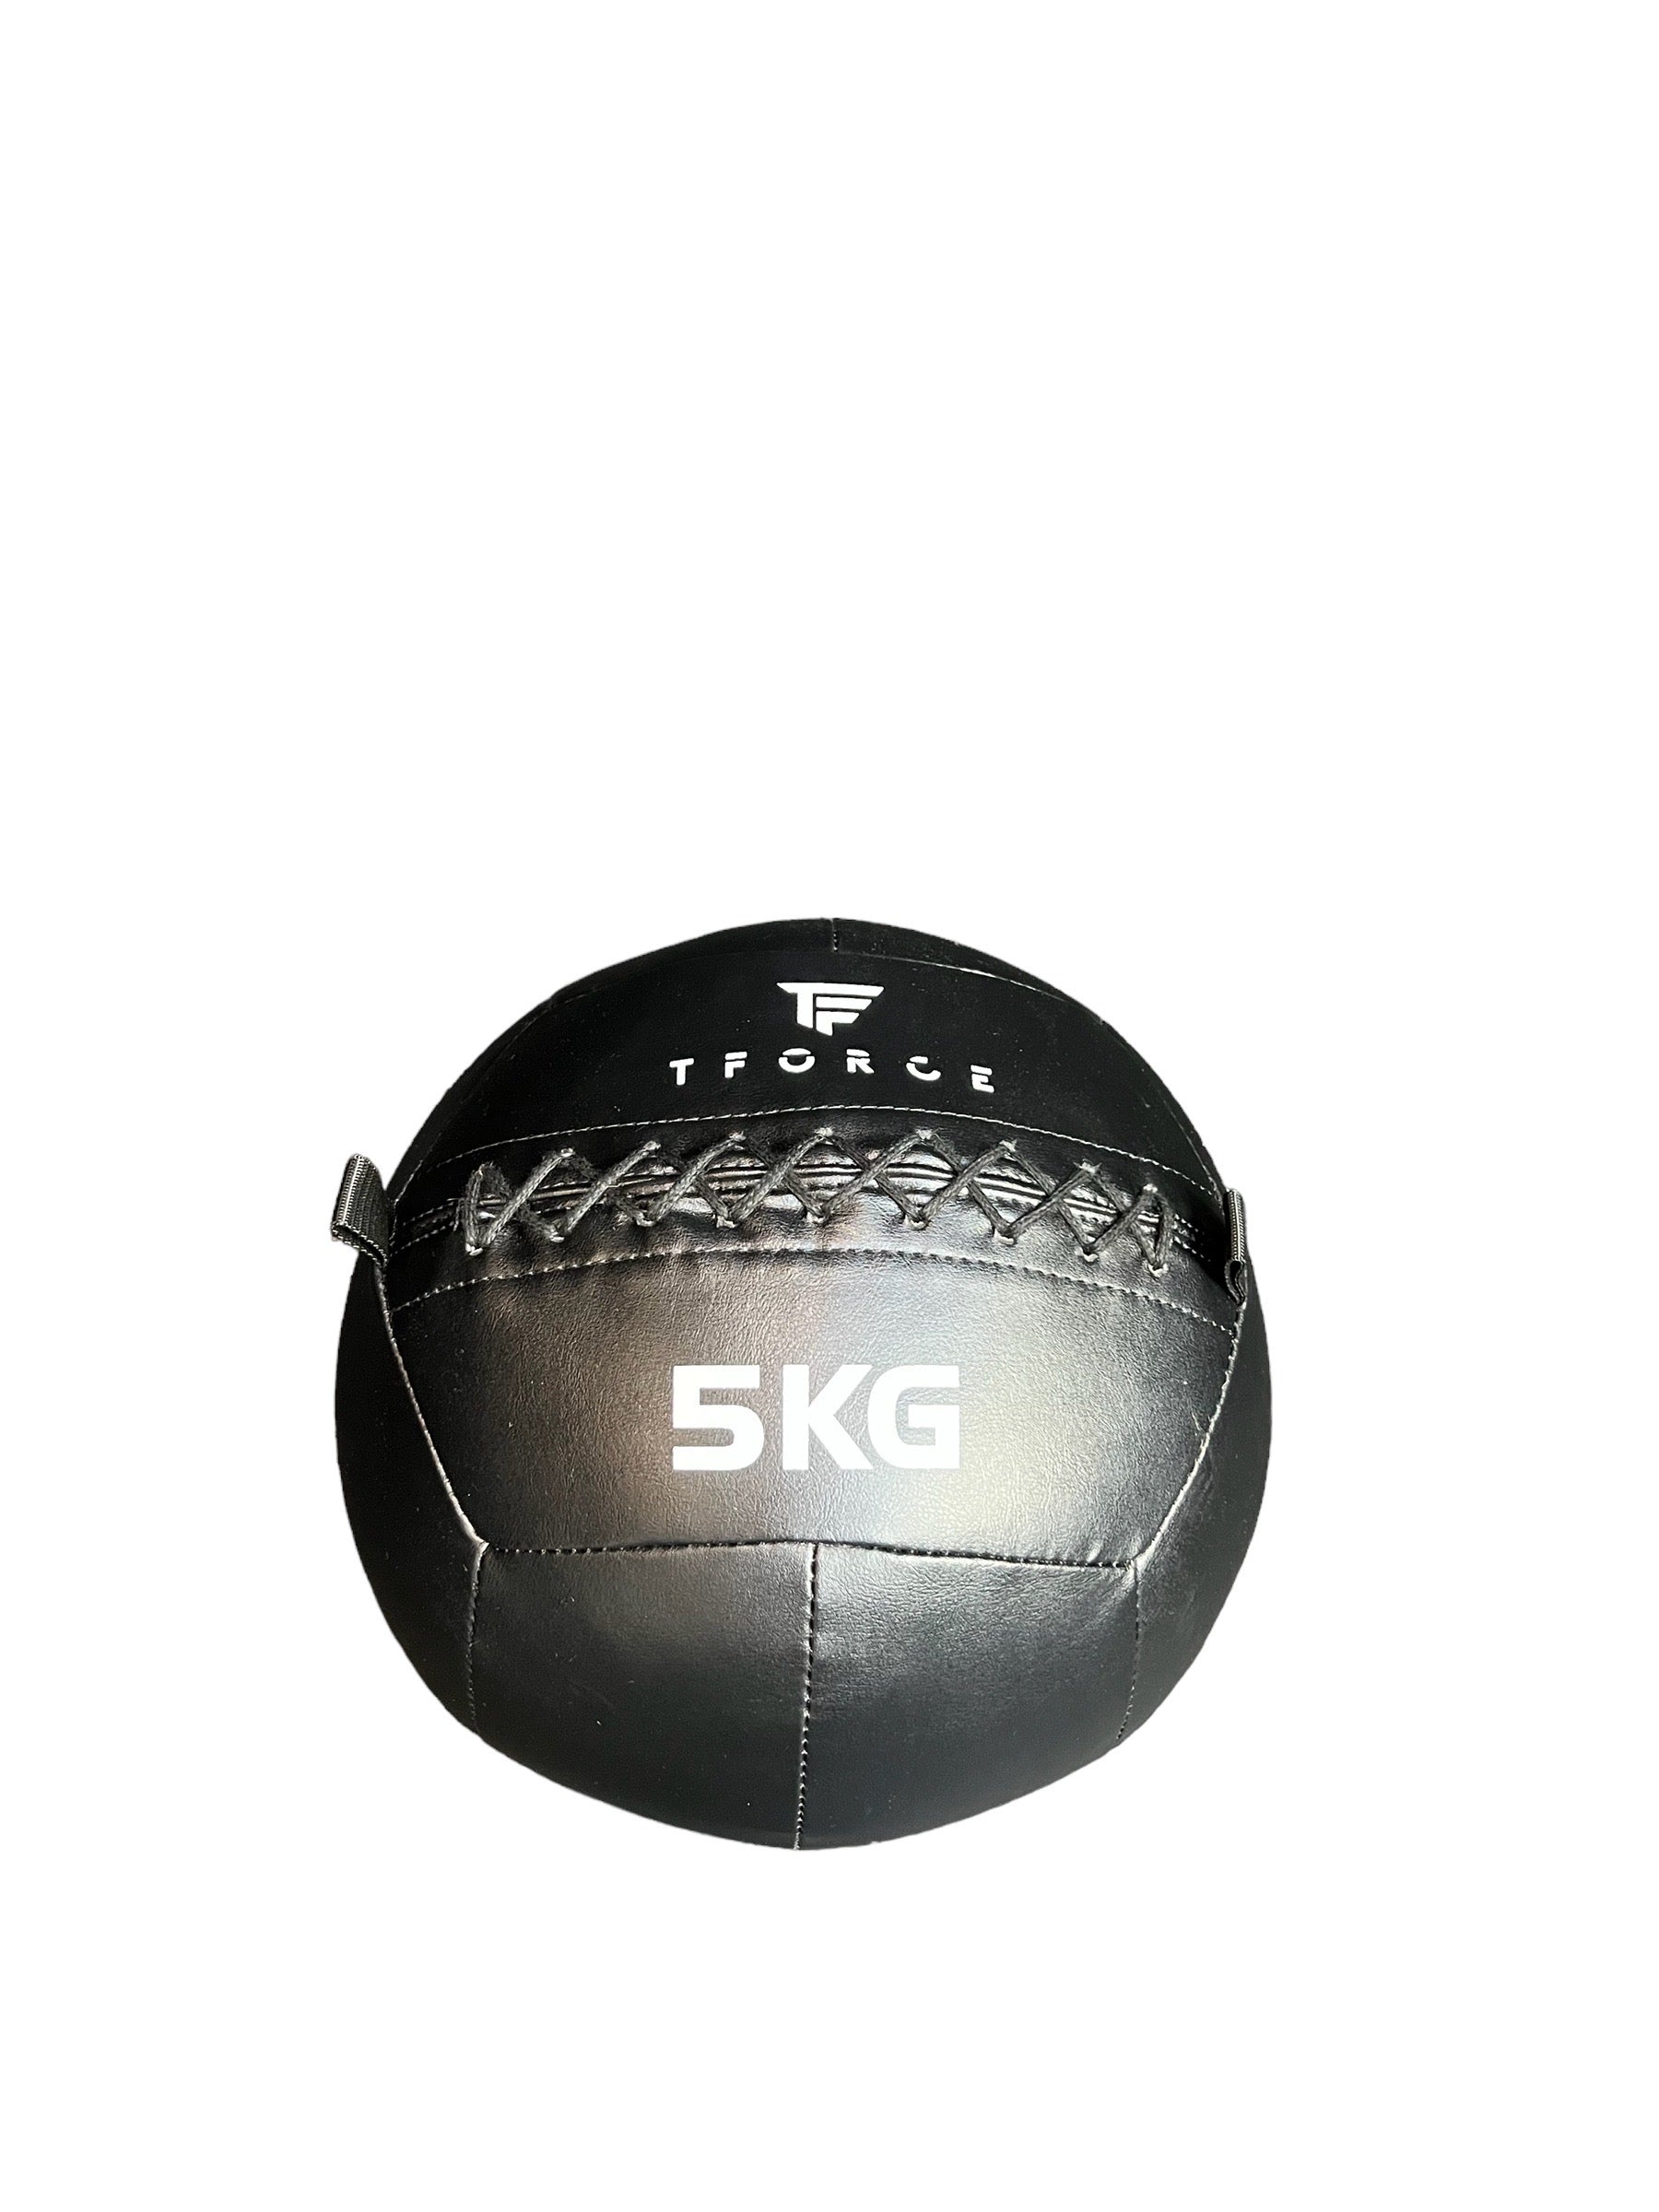 TFORCE WALL BALL (sold individually)